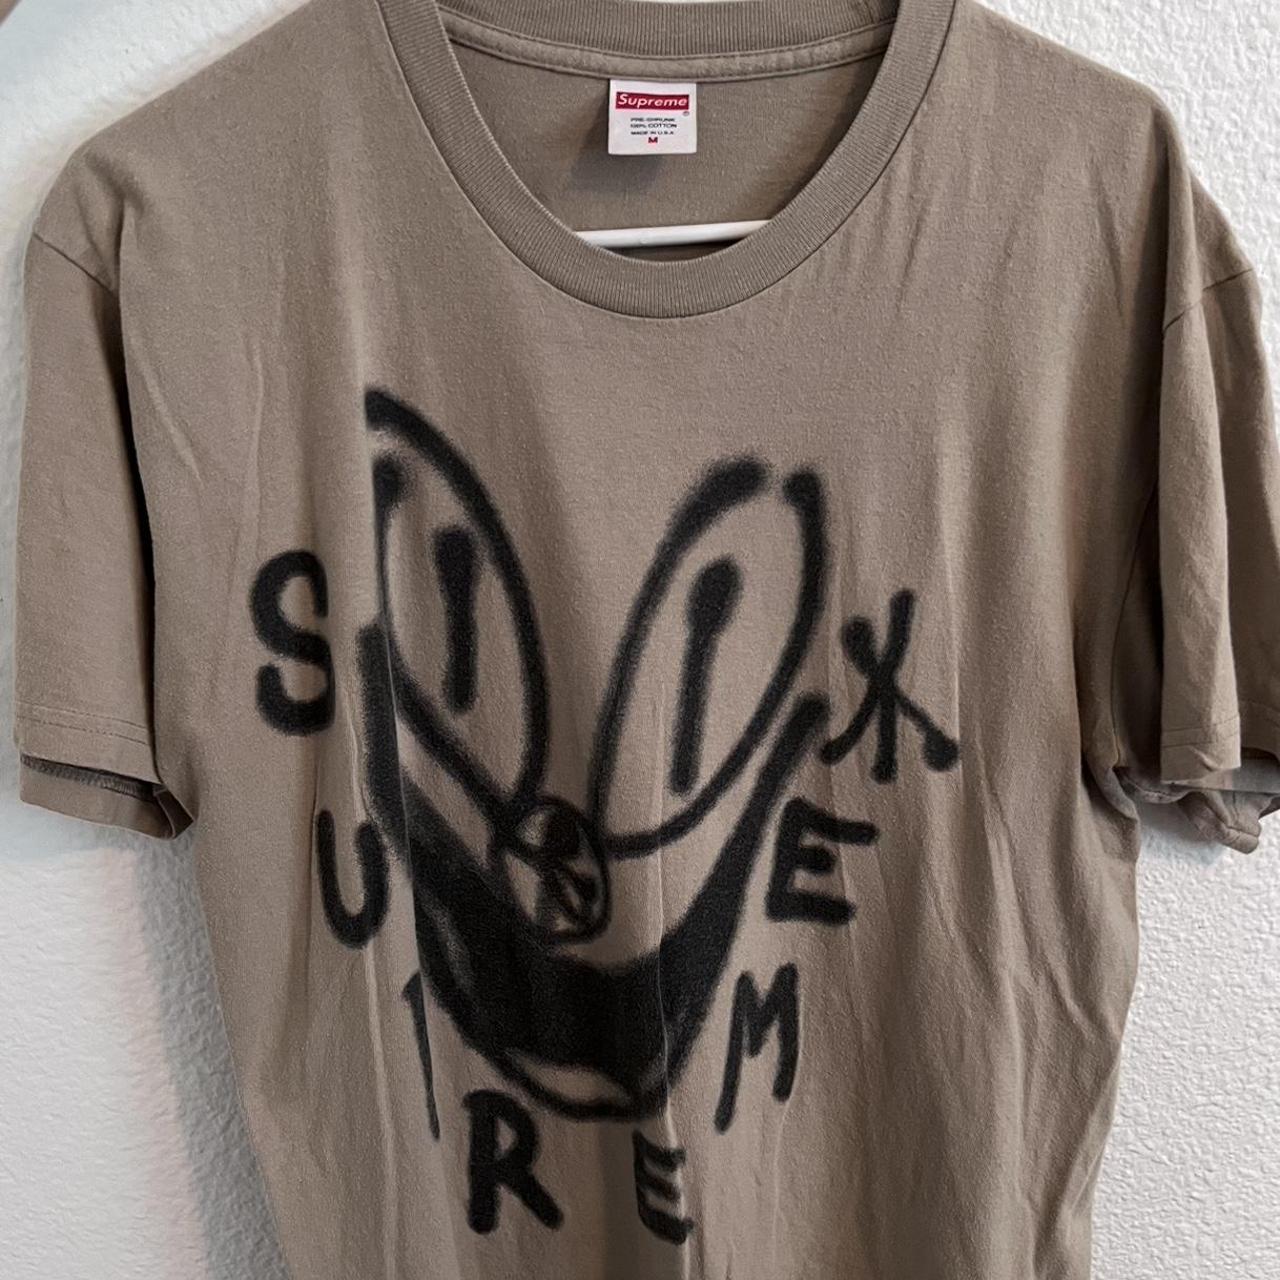 SUPREME Smile Tee Tan , Tan medium size shirt; 2018...